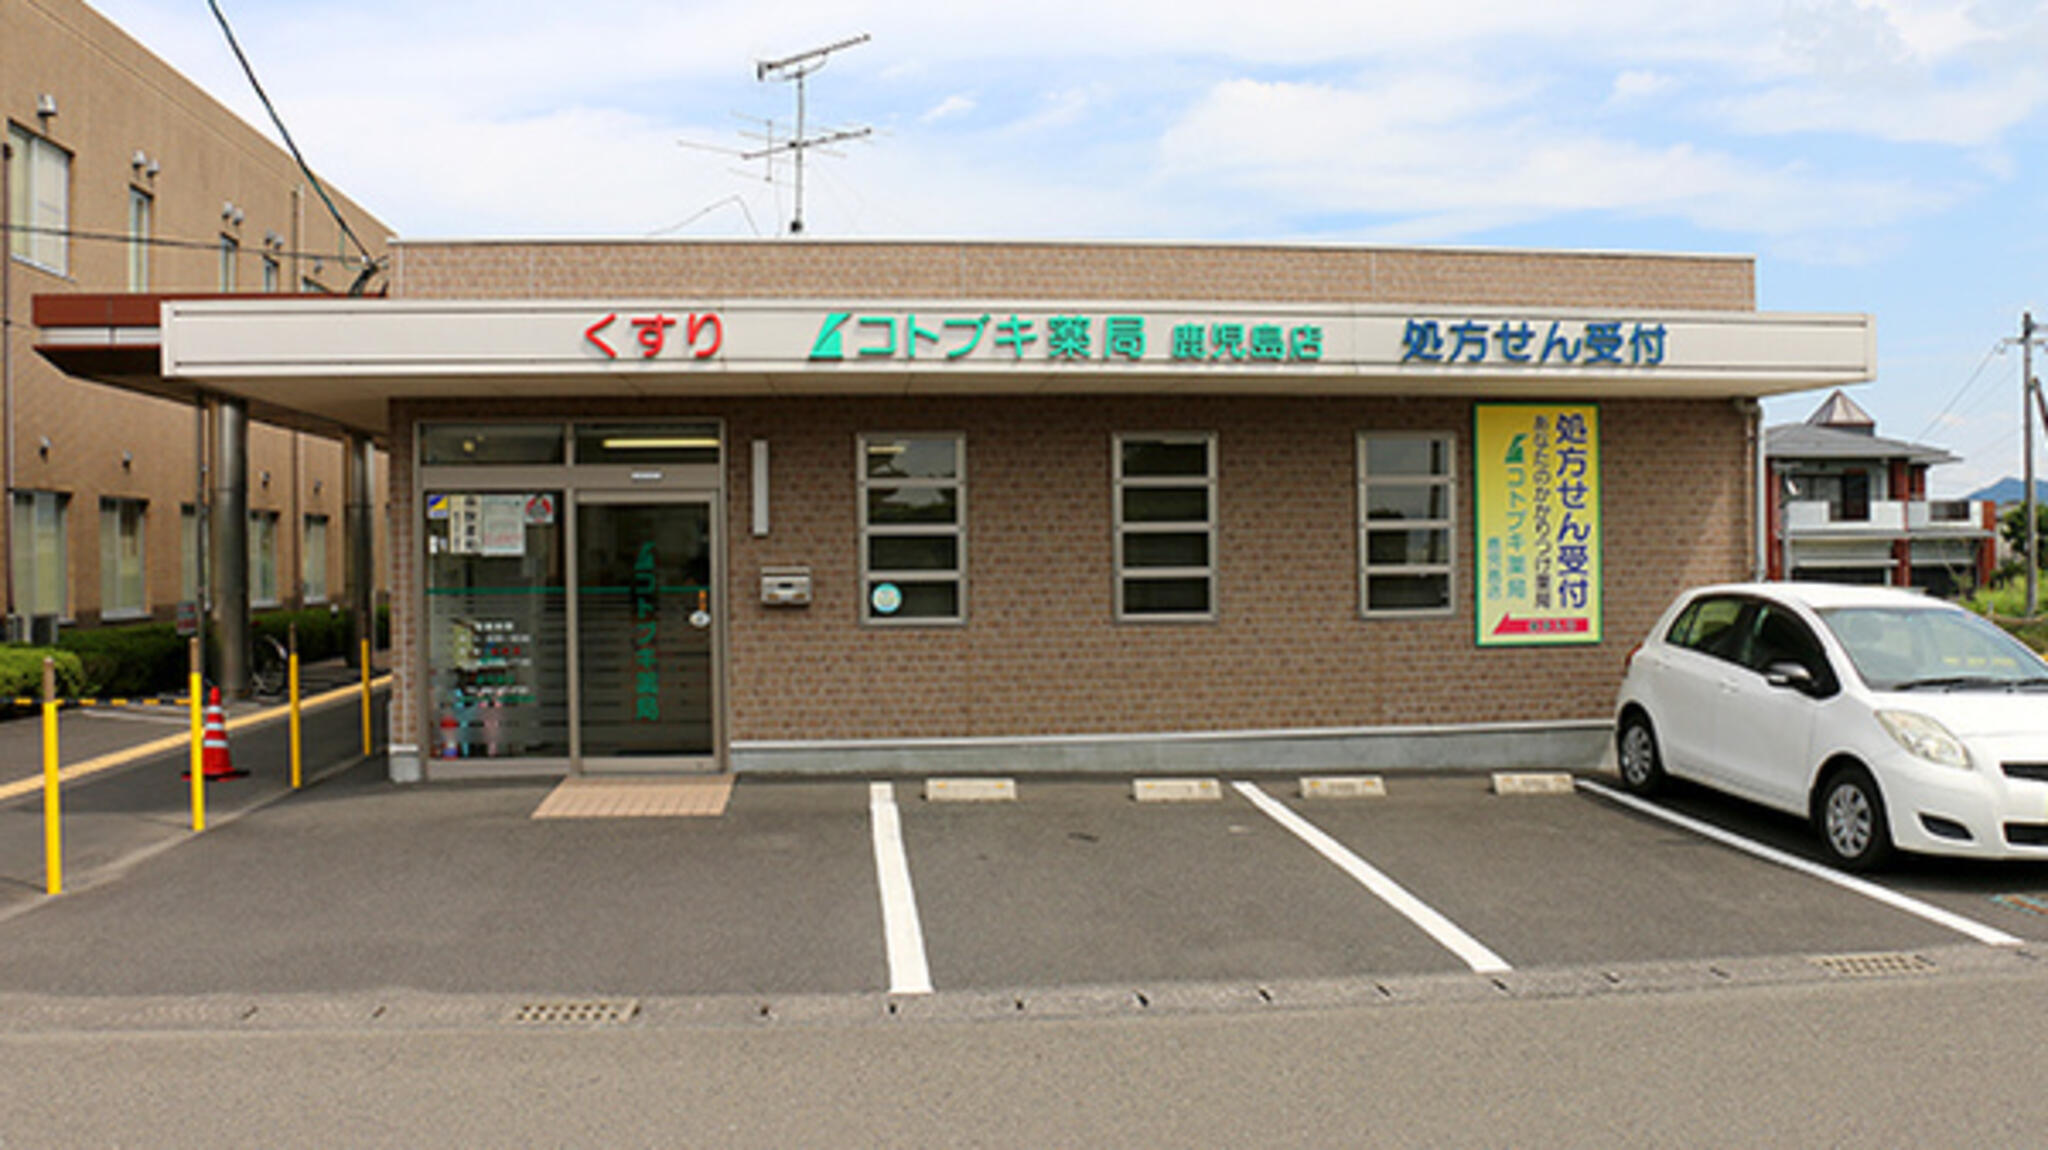 阪神調剤薬局 コトブキ薬局 鹿児島店の代表写真3